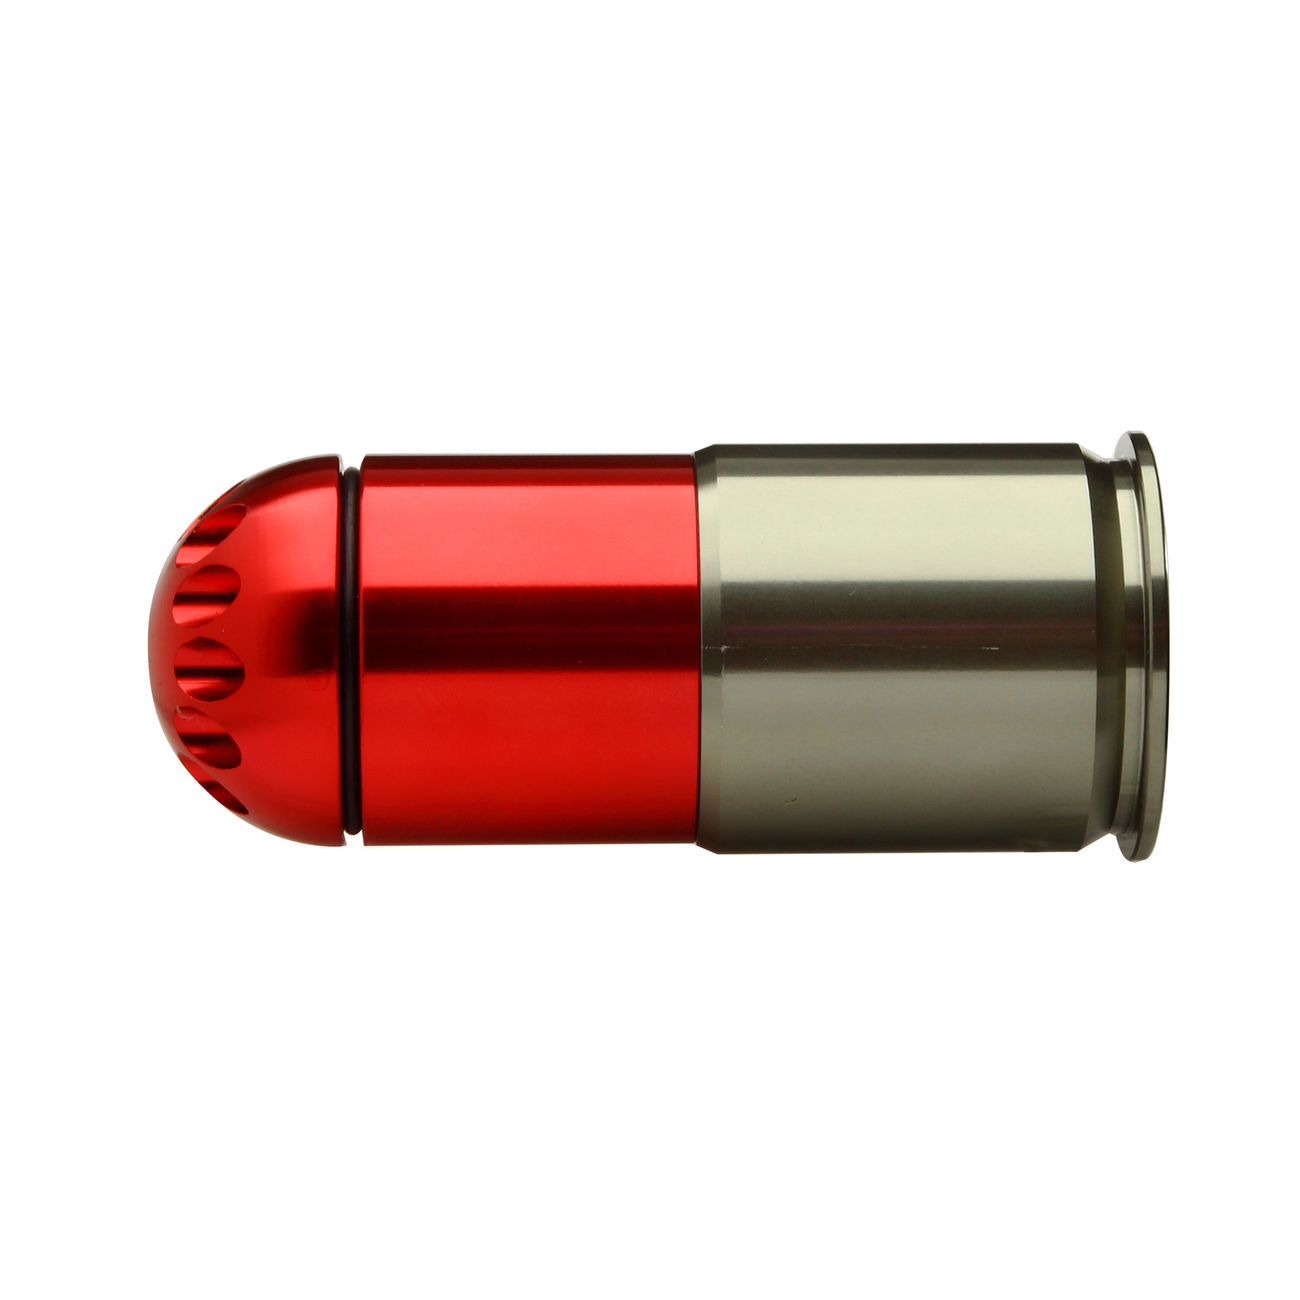 MadBull XM108HP 40mm Vollmetall Hülse / Einlegepatrone f. 108 6mm BBs rot Bild 1